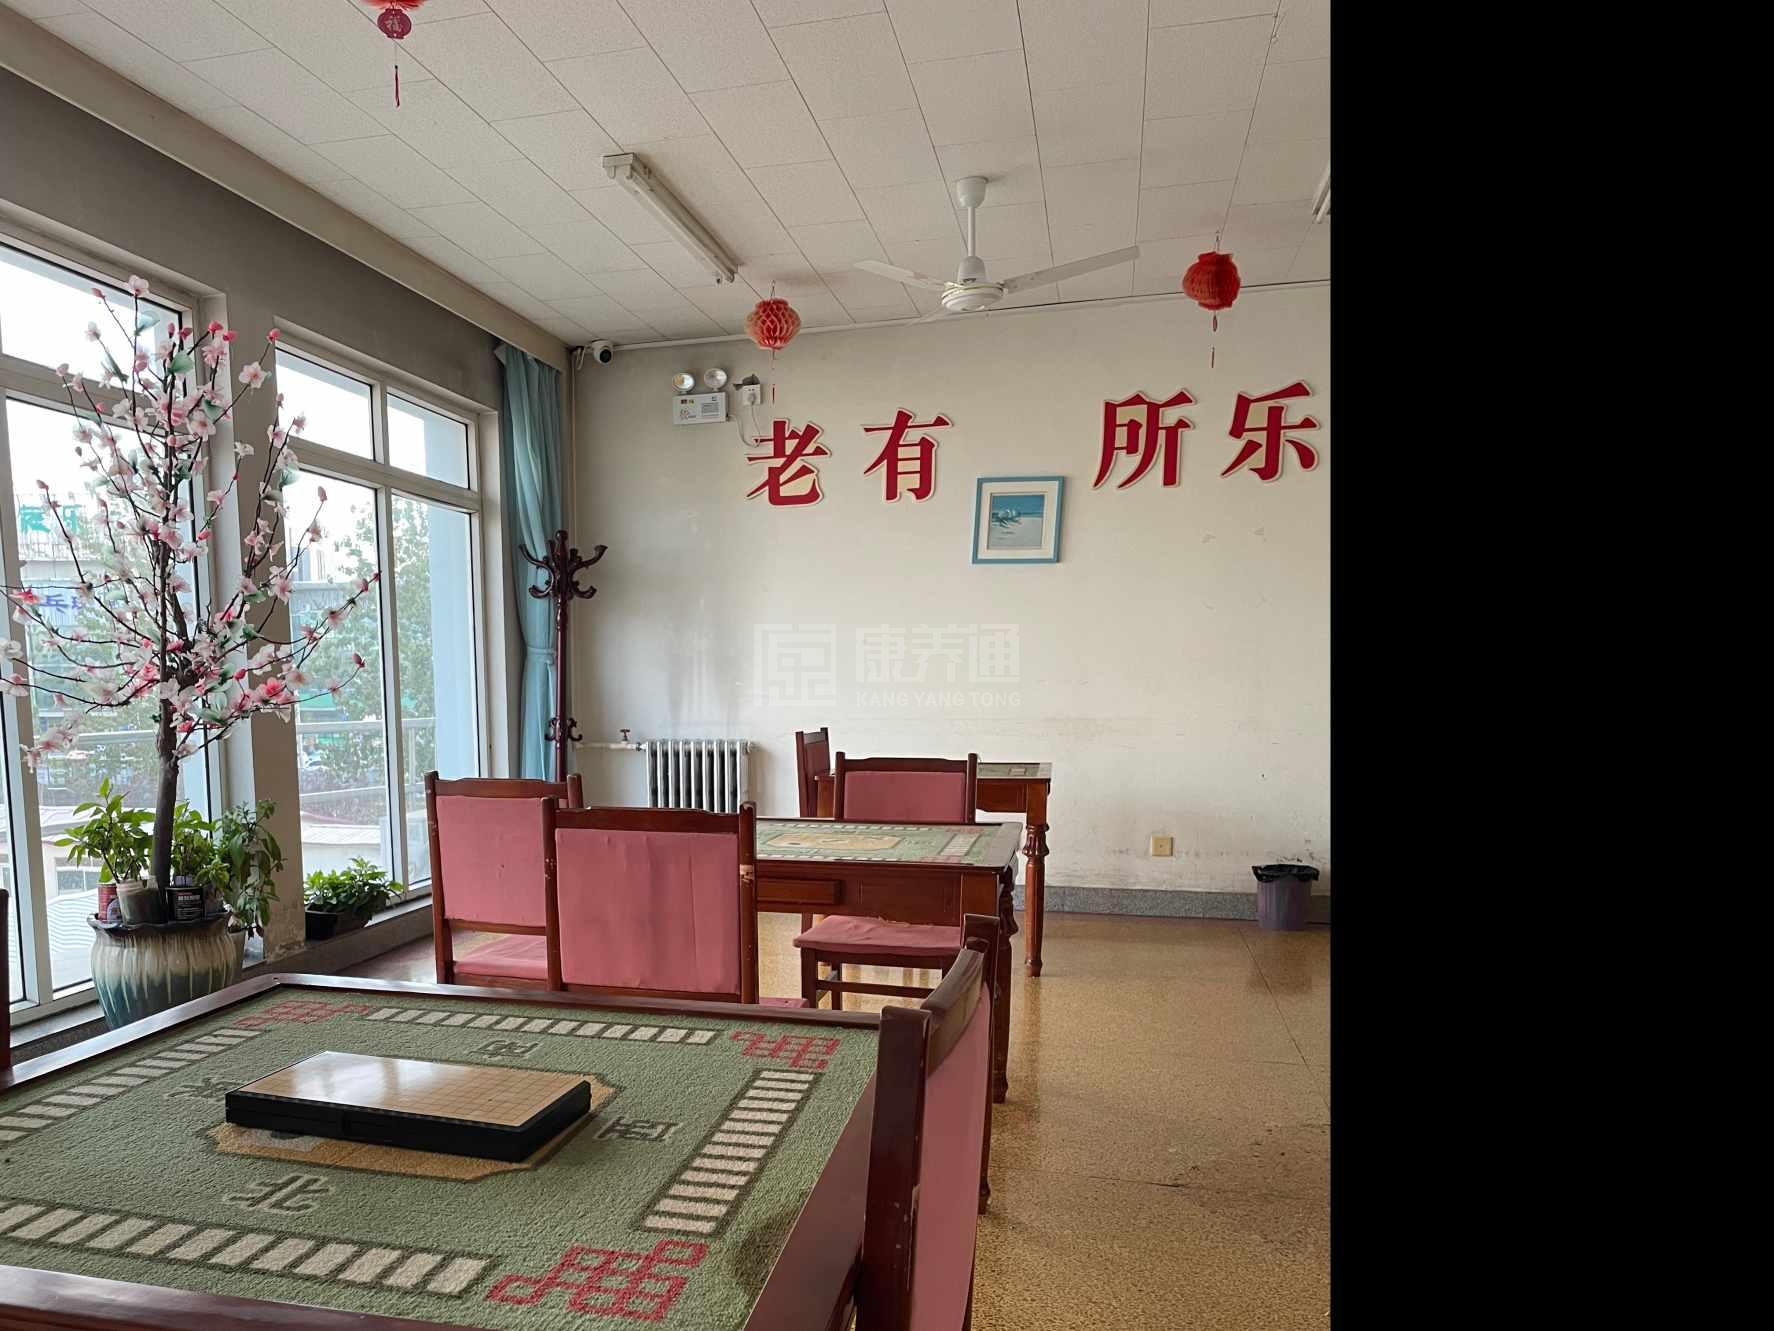 天津市武清区养老院服务项目图3惬意的环境、感受岁月静好